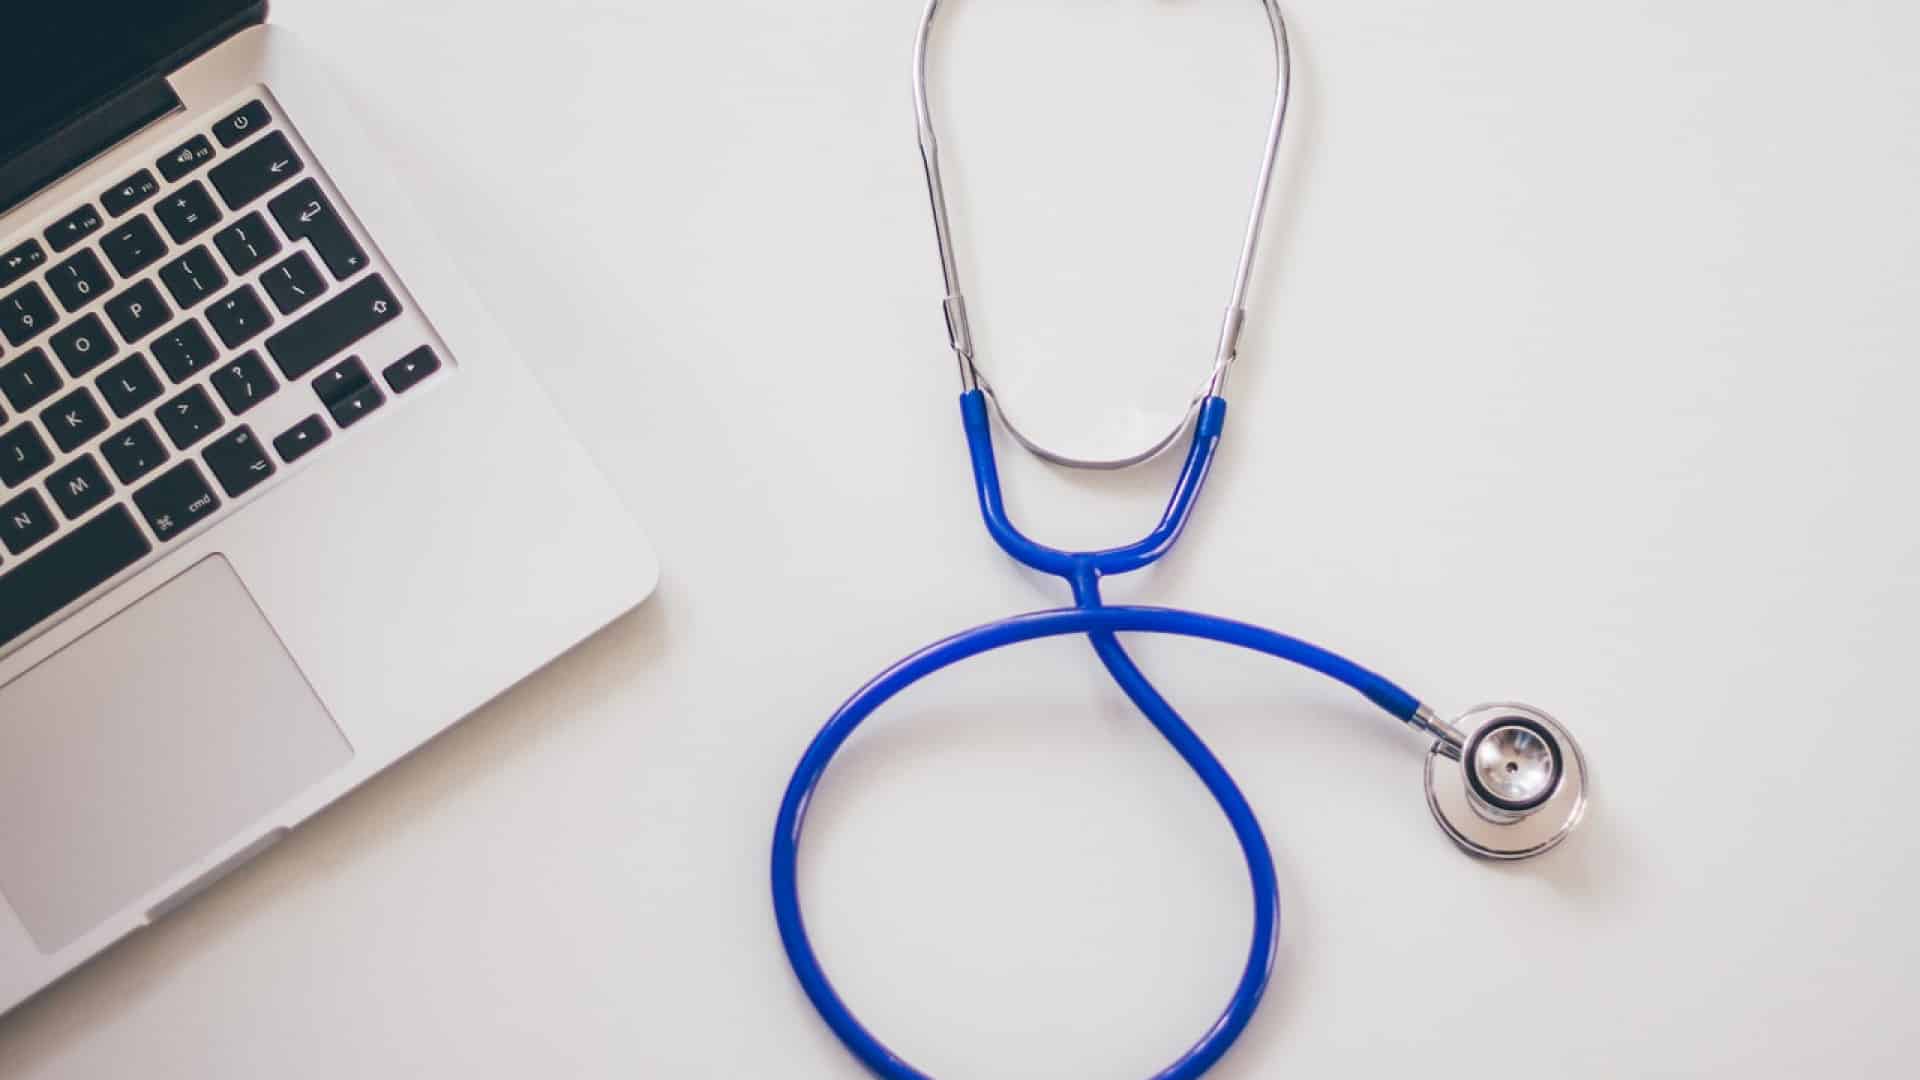 Un stéthoscope et un ordinateur portable sur une surface blanche, symbolisant l'intersection des soins de santé et de la technologie.